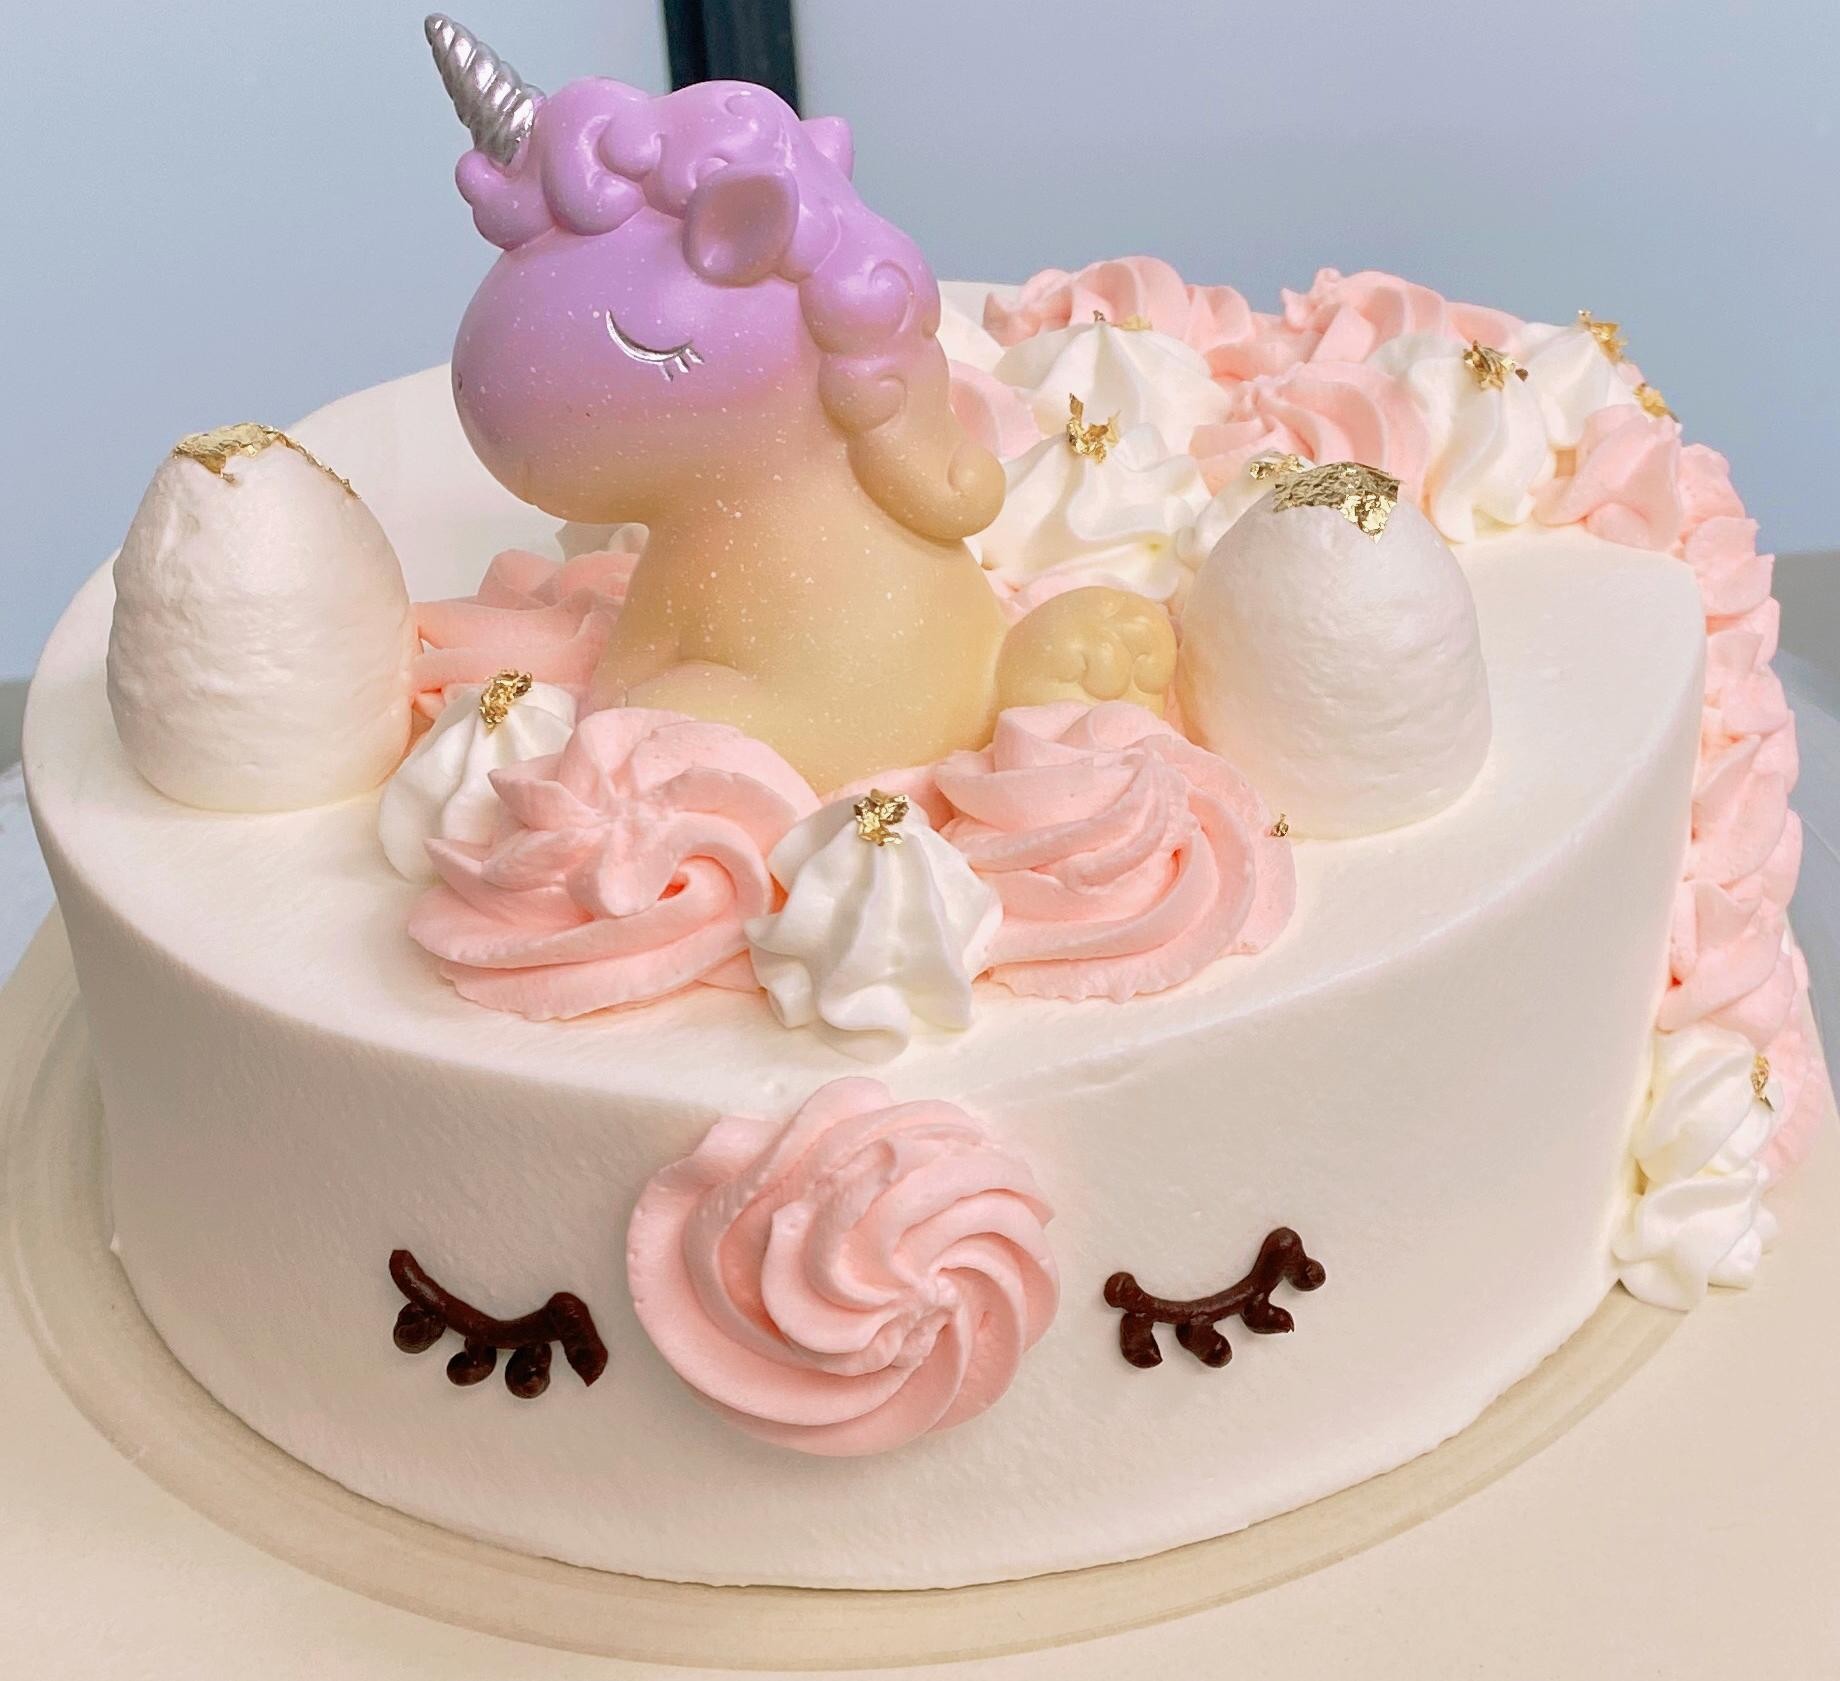 Customized Unicorn Cake